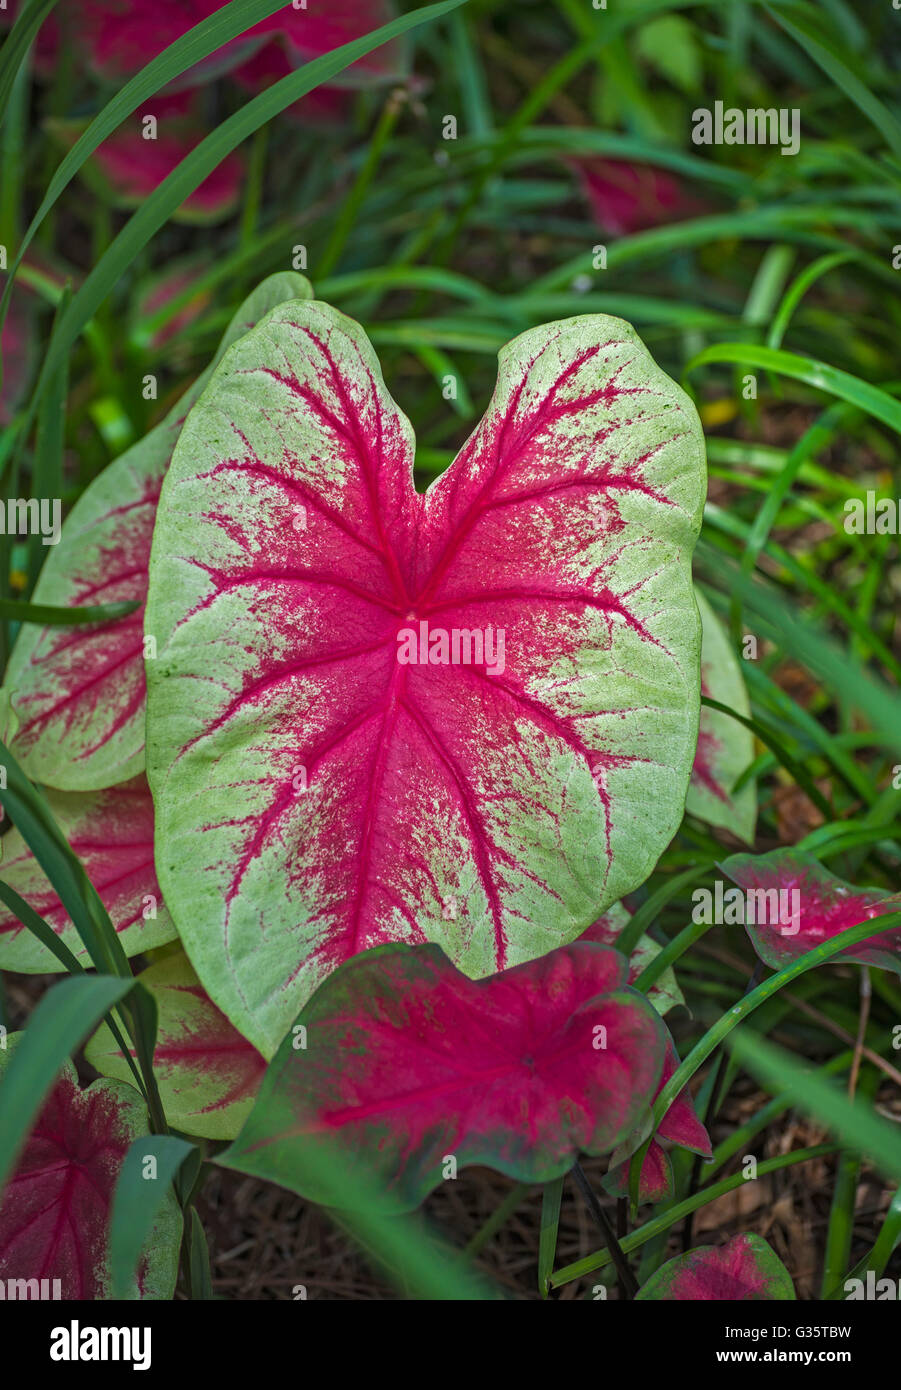 Botanical Gardens in Gainesville, Florida. Caladium-Caladium bicolor from Brazil & Venezuela. Stock Photo